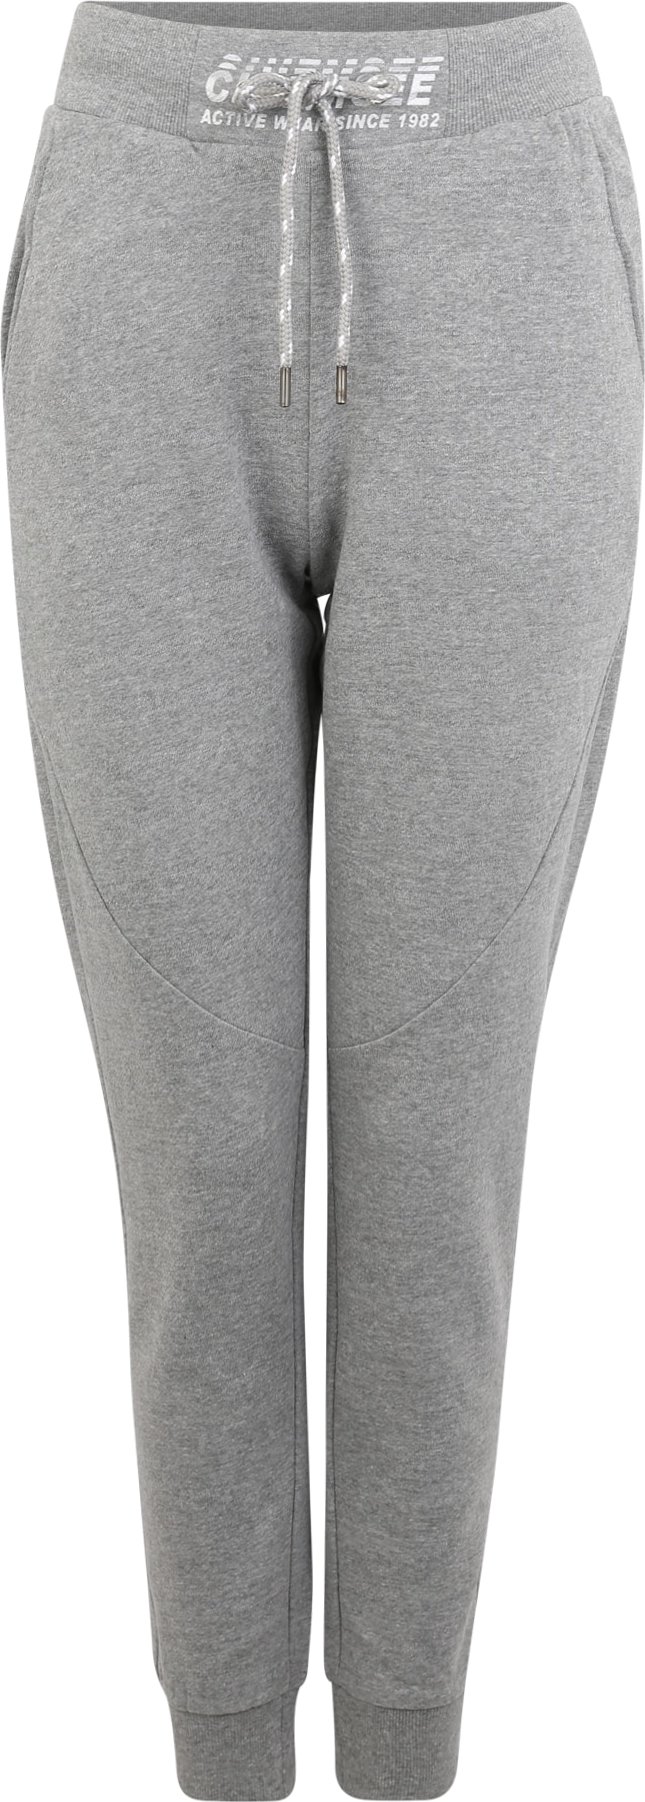 CHIEMSEE Sportovní kalhoty šedý melír / bílá